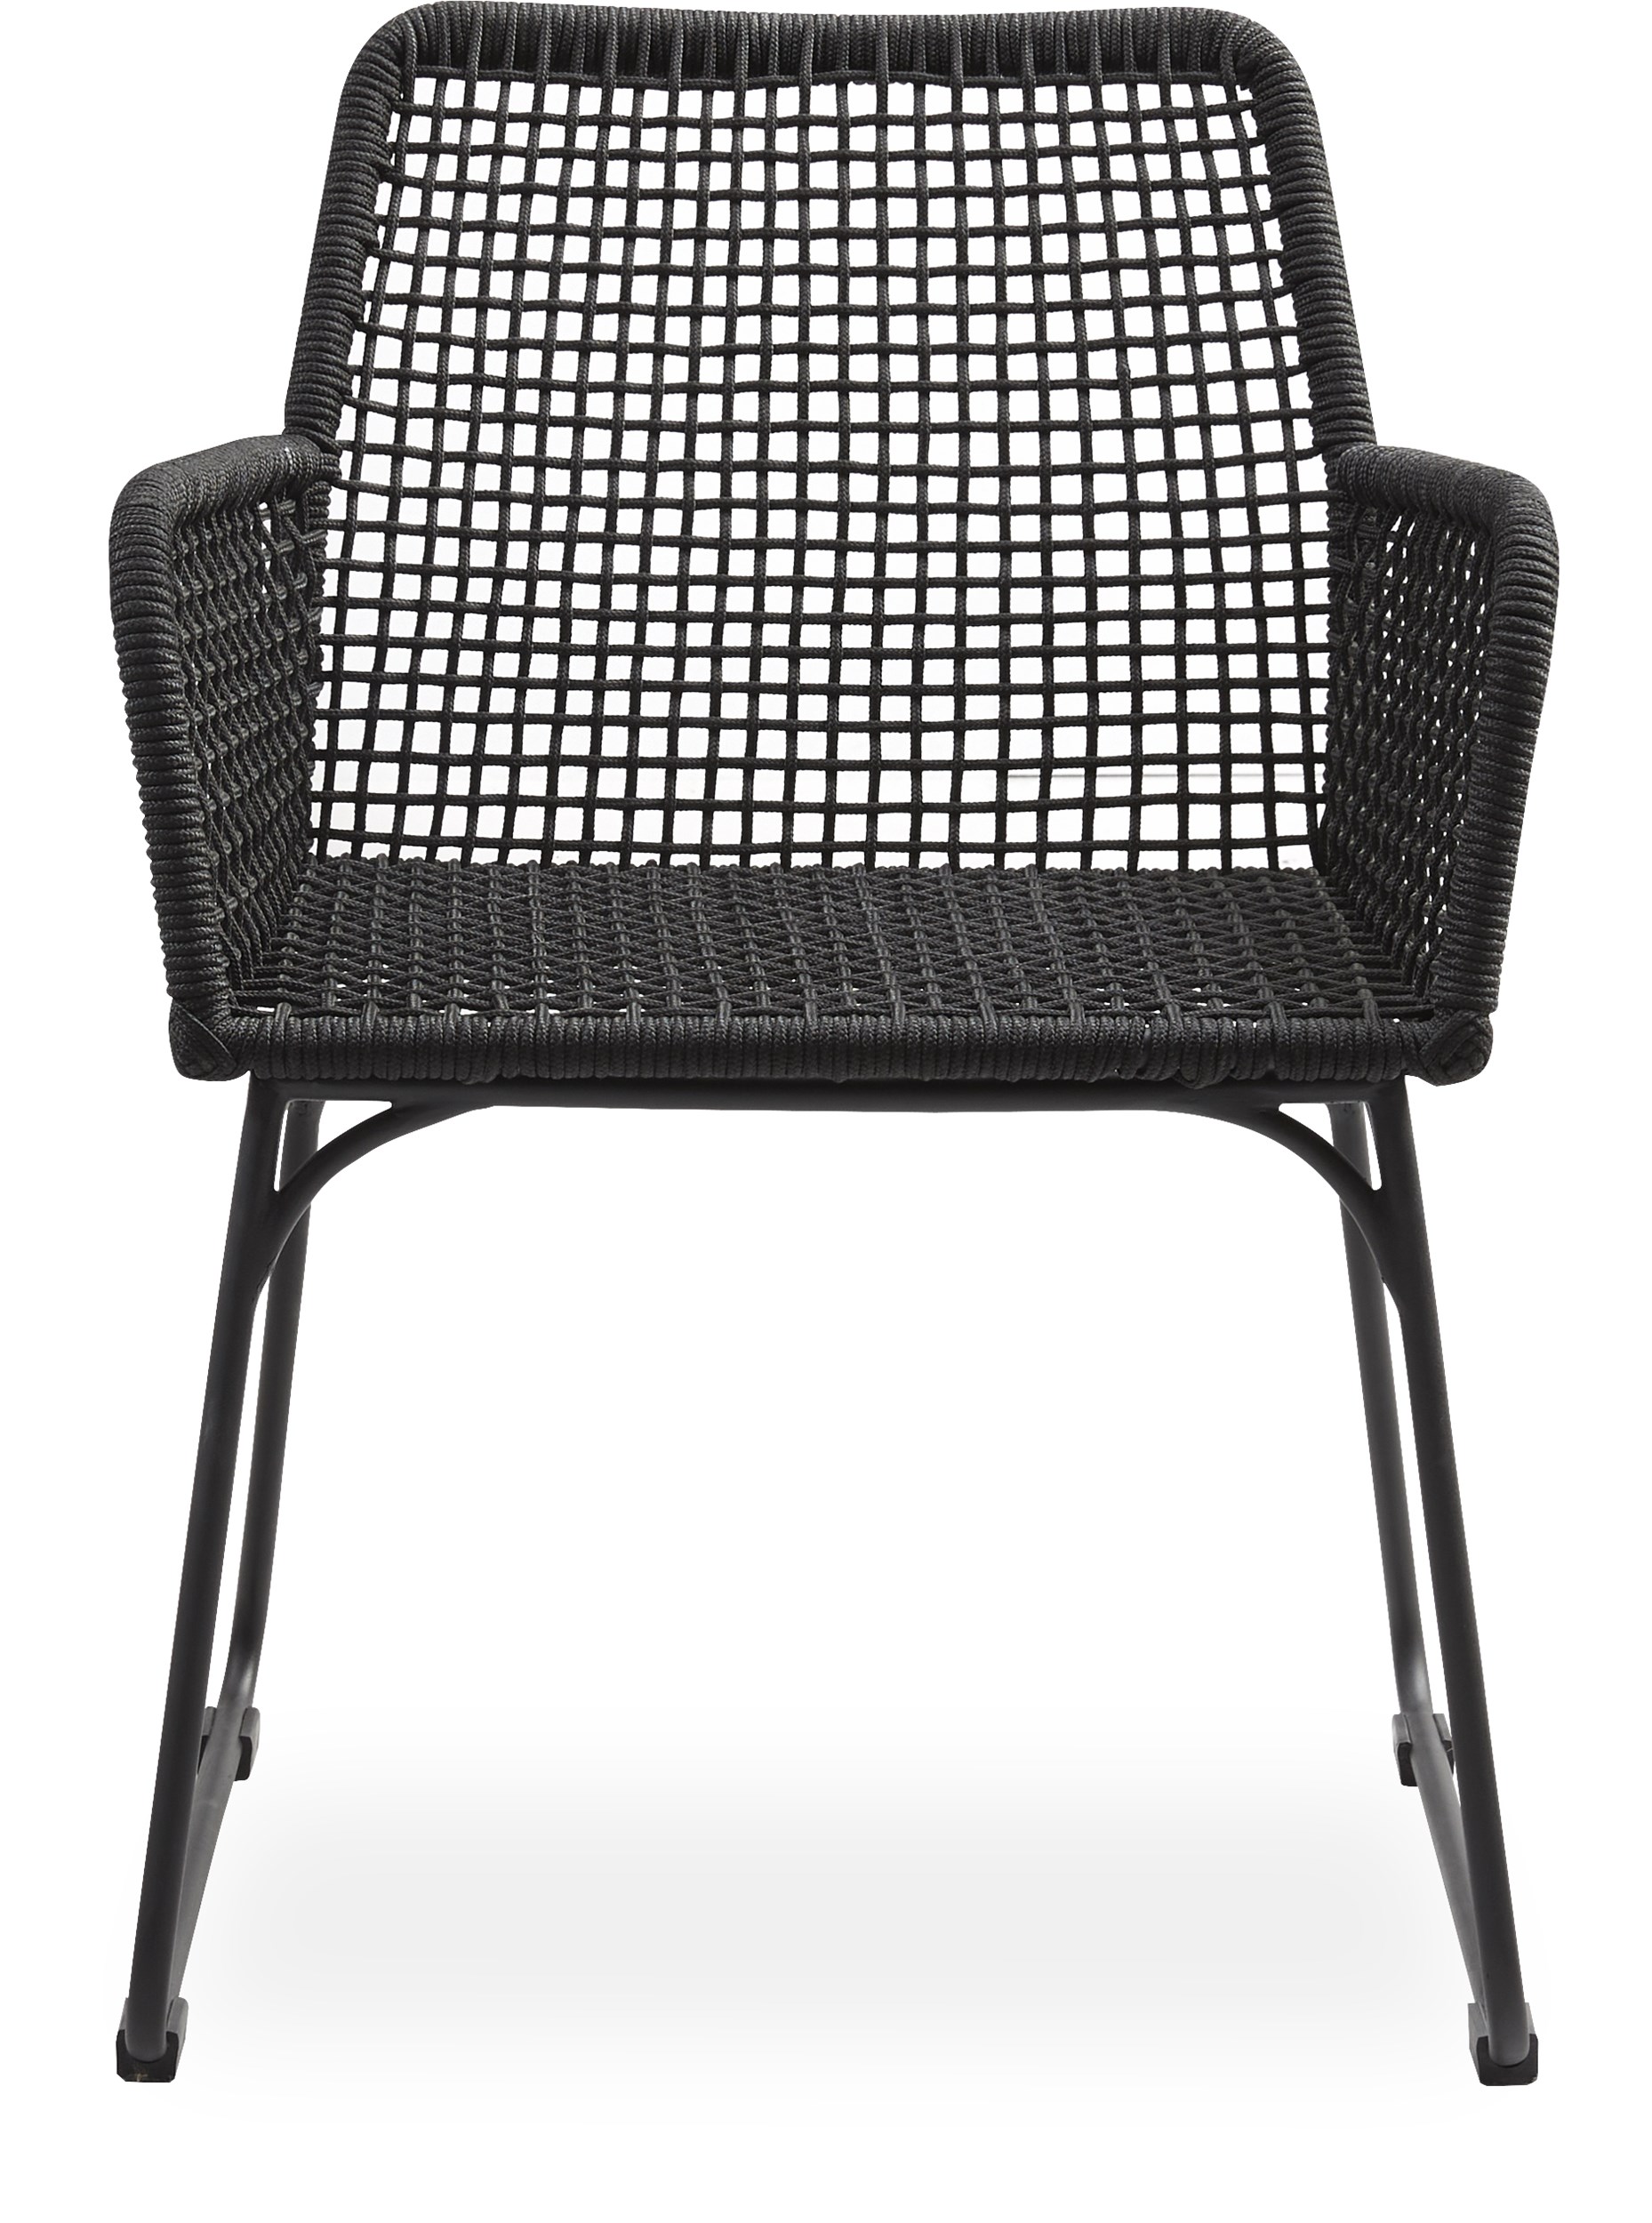 Atlana Trädgårdsstol - Sits i svart, runt rep och stomme i svart pulverlackerad metall